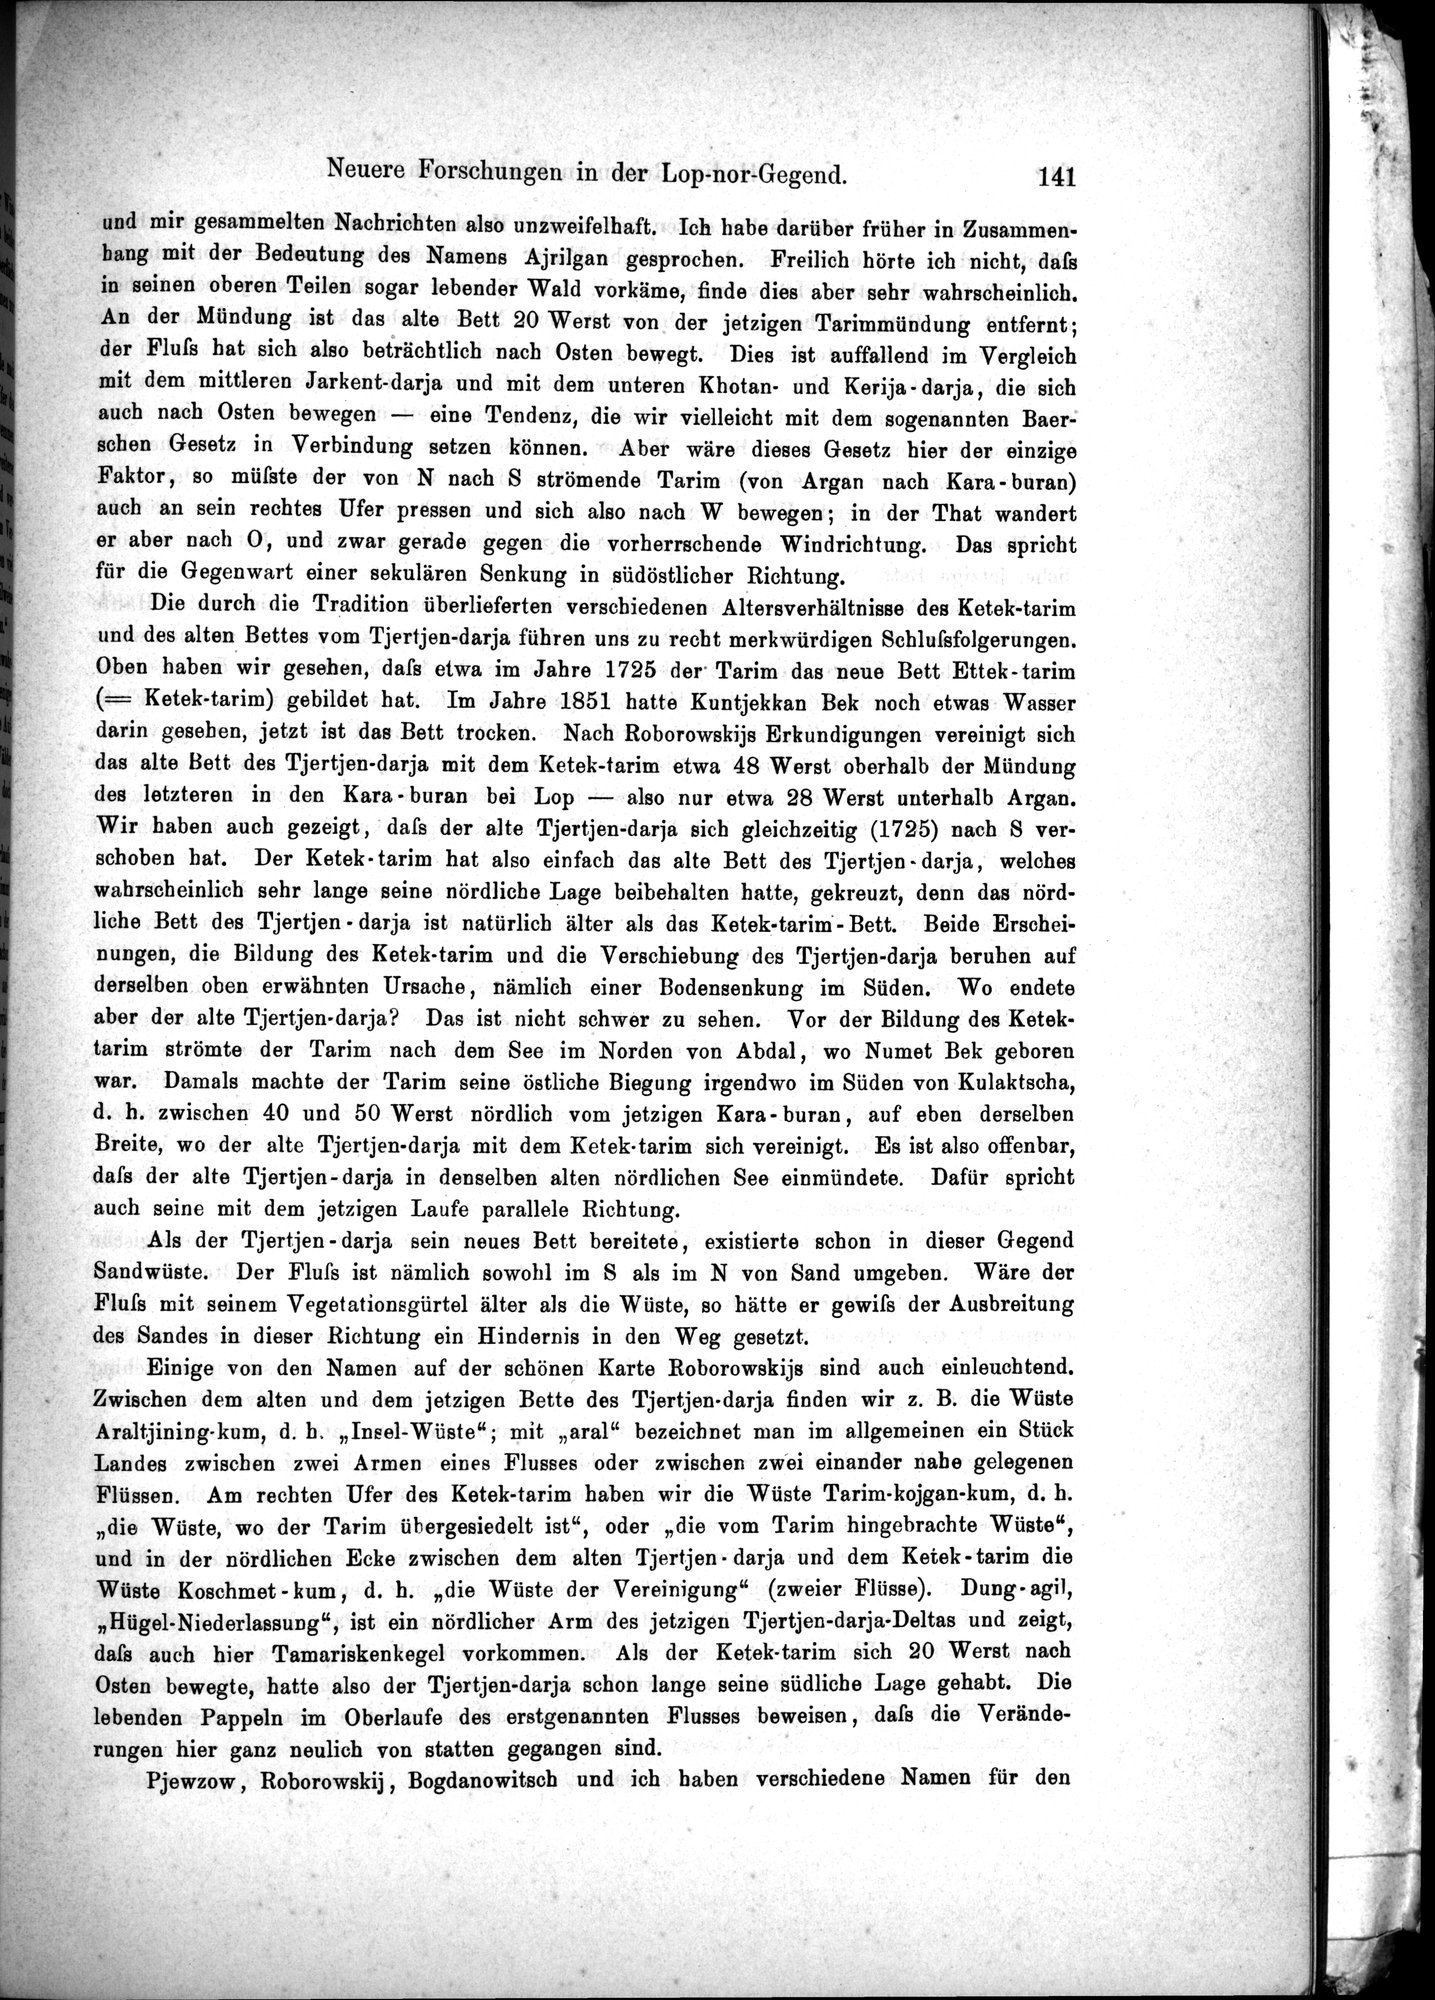 Die Geographische-Wissenschaftlichen Ergebnisse meiner Reisen in Zentralasien, 1894-1897 : vol.1 / Page 153 (Grayscale High Resolution Image)